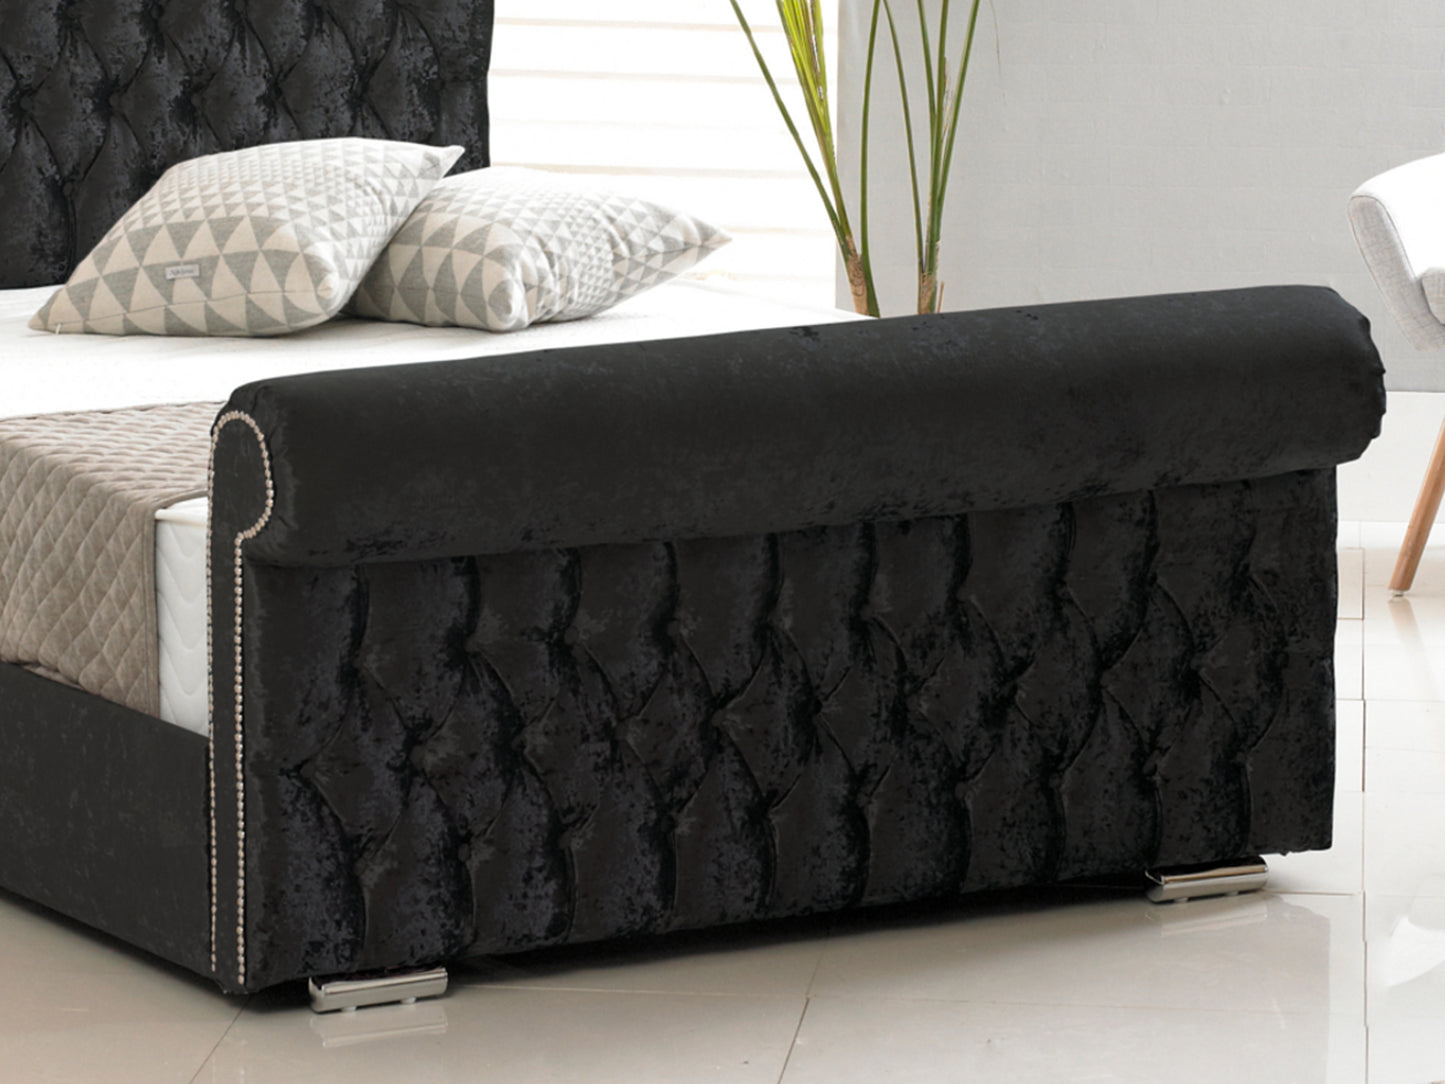 Buckingham Luxury Bed Frame in Crushed Velvet Black